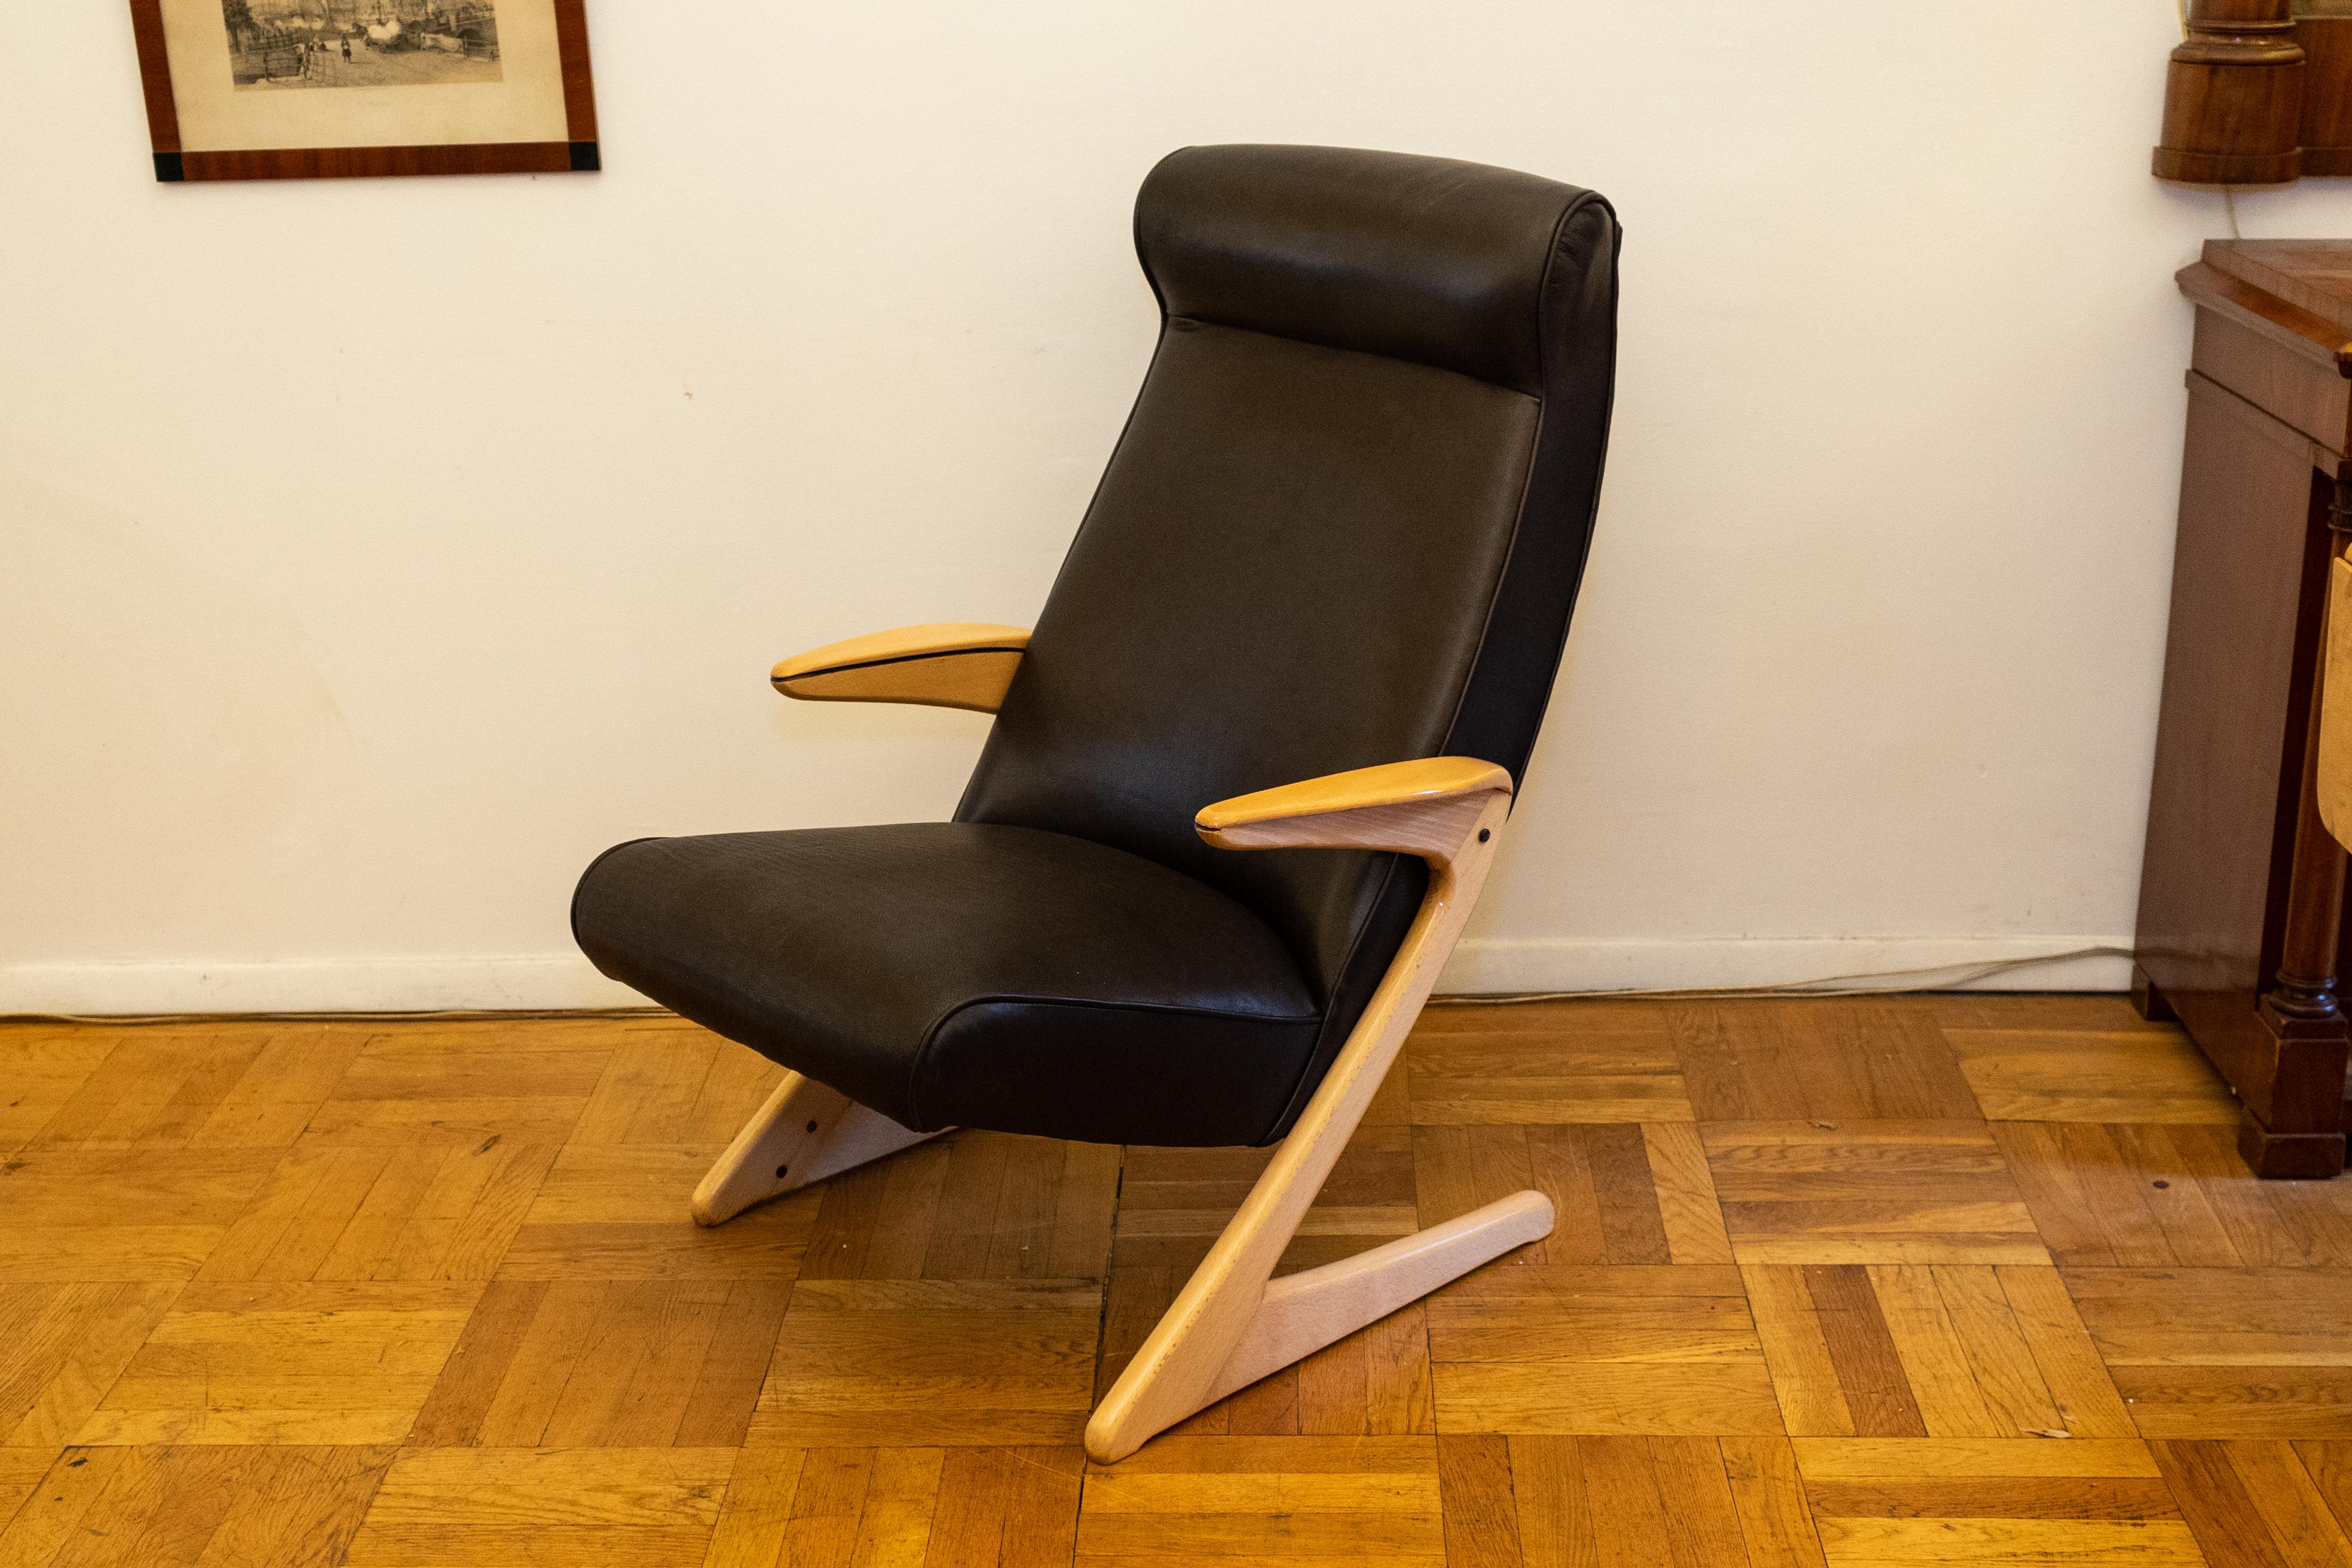 Une chaise confortable au design minimaliste époustouflant et à l'assise en cuir doux comme du beurre.  Les accoudoirs et les pieds de cette chaise sont boulonnés directement à l'armature de l'assise et du dossier qui dissimule les supports